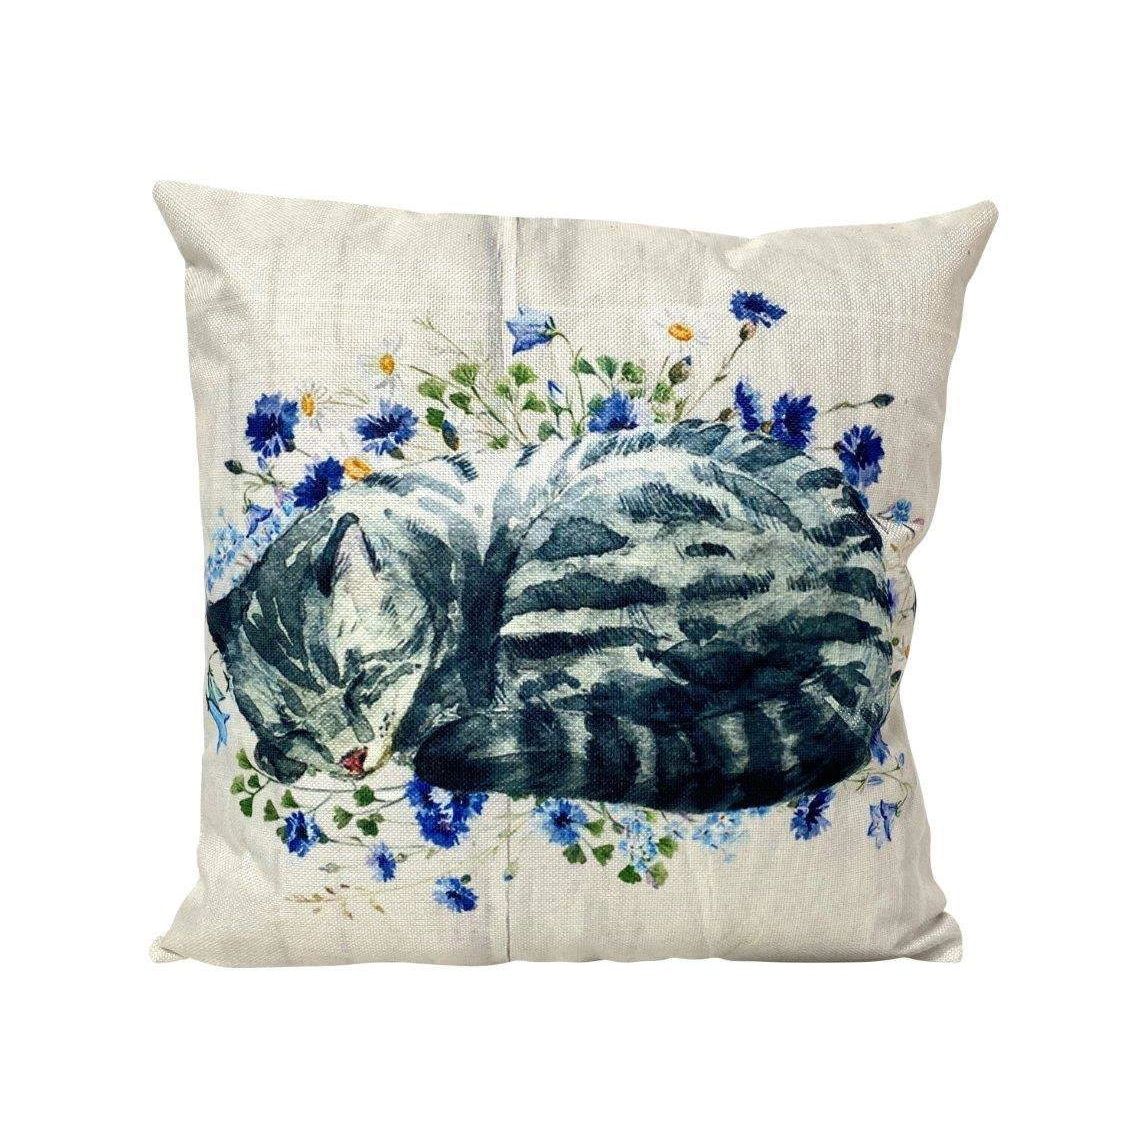 Curled Tabby Cat Handmade Cushion, 12x12"